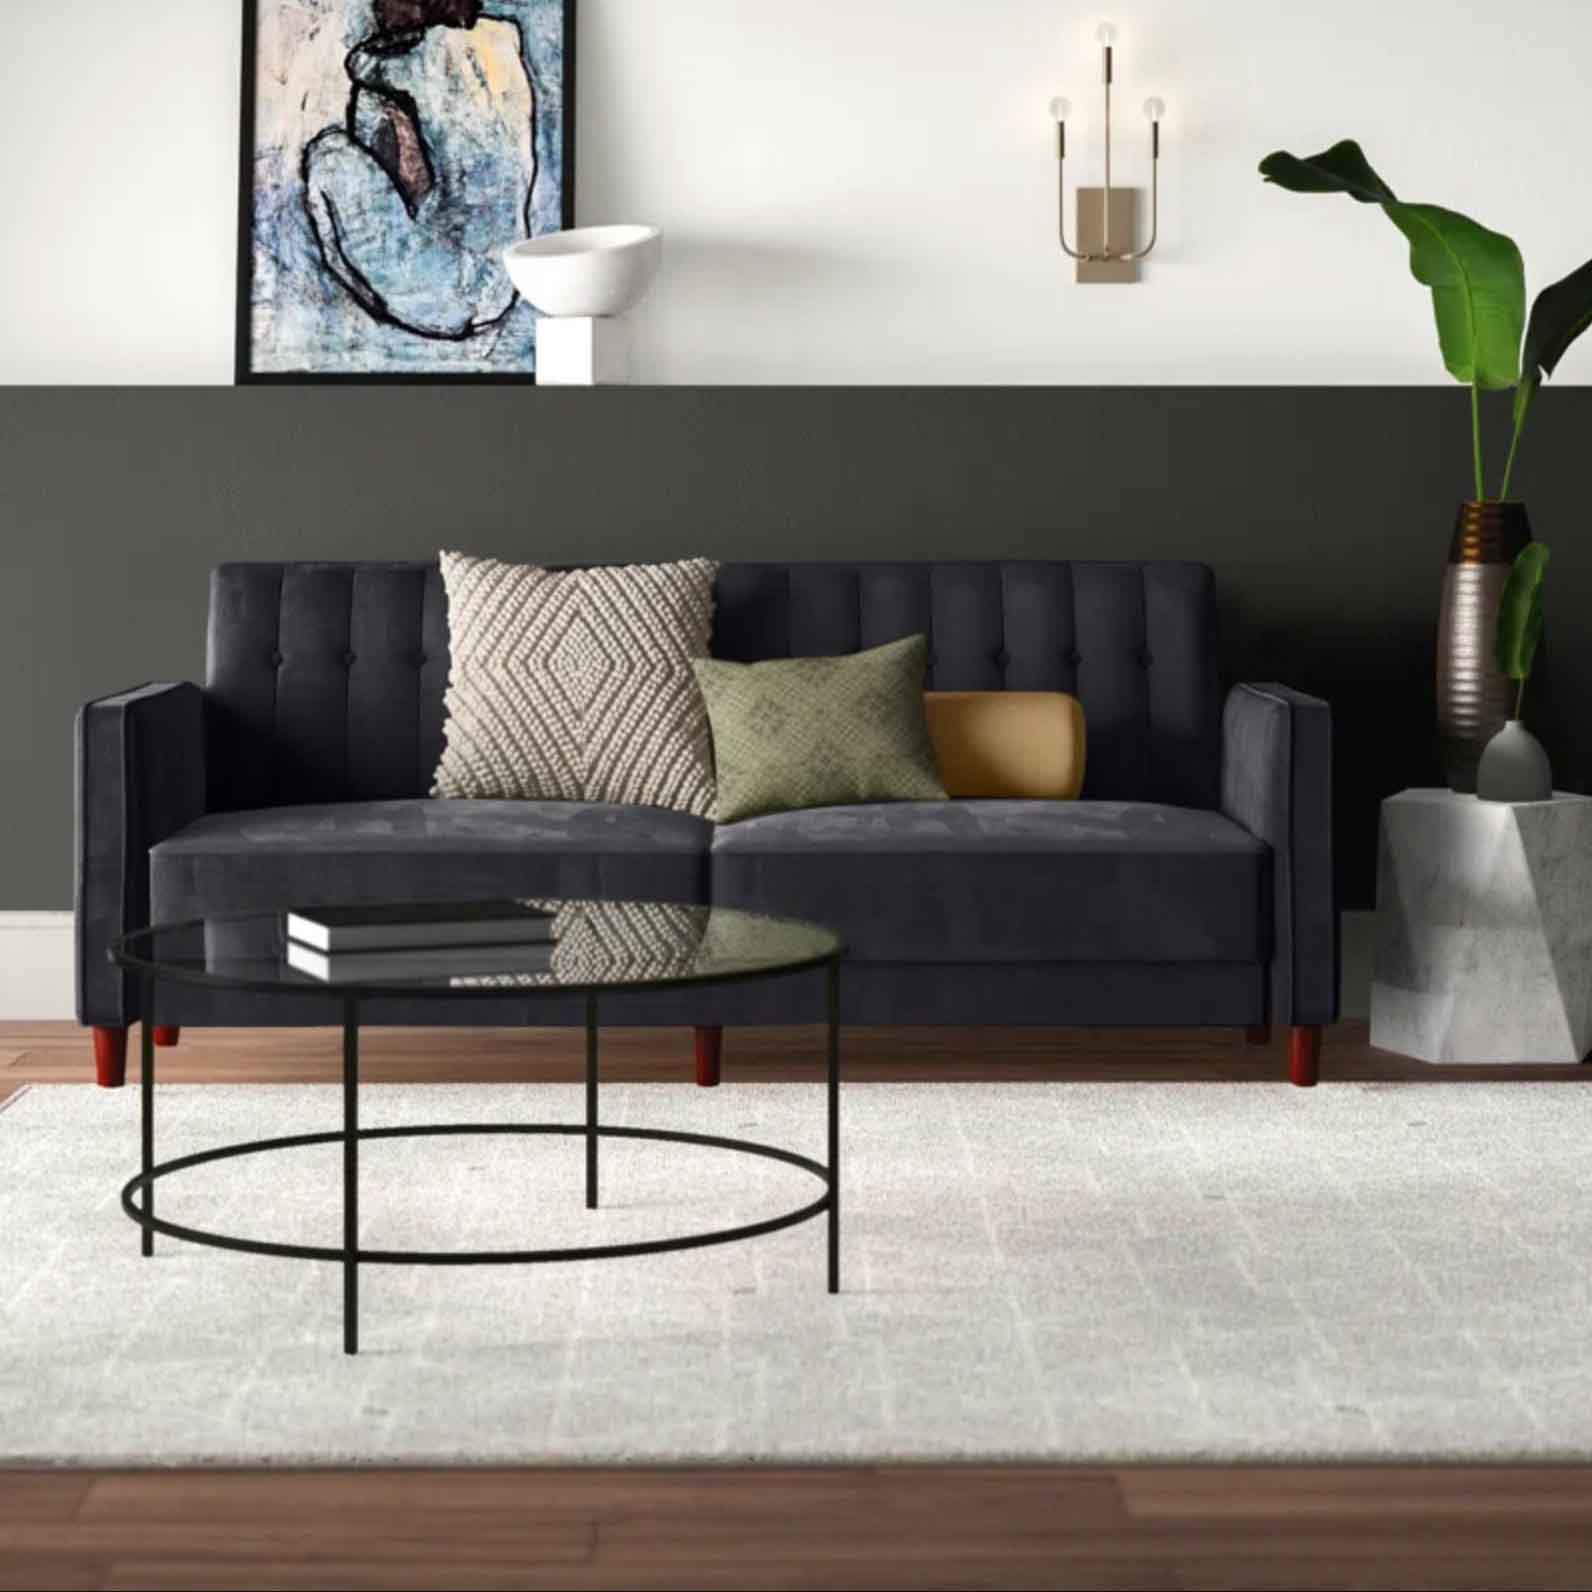 Grey velvet sofa in living room setting